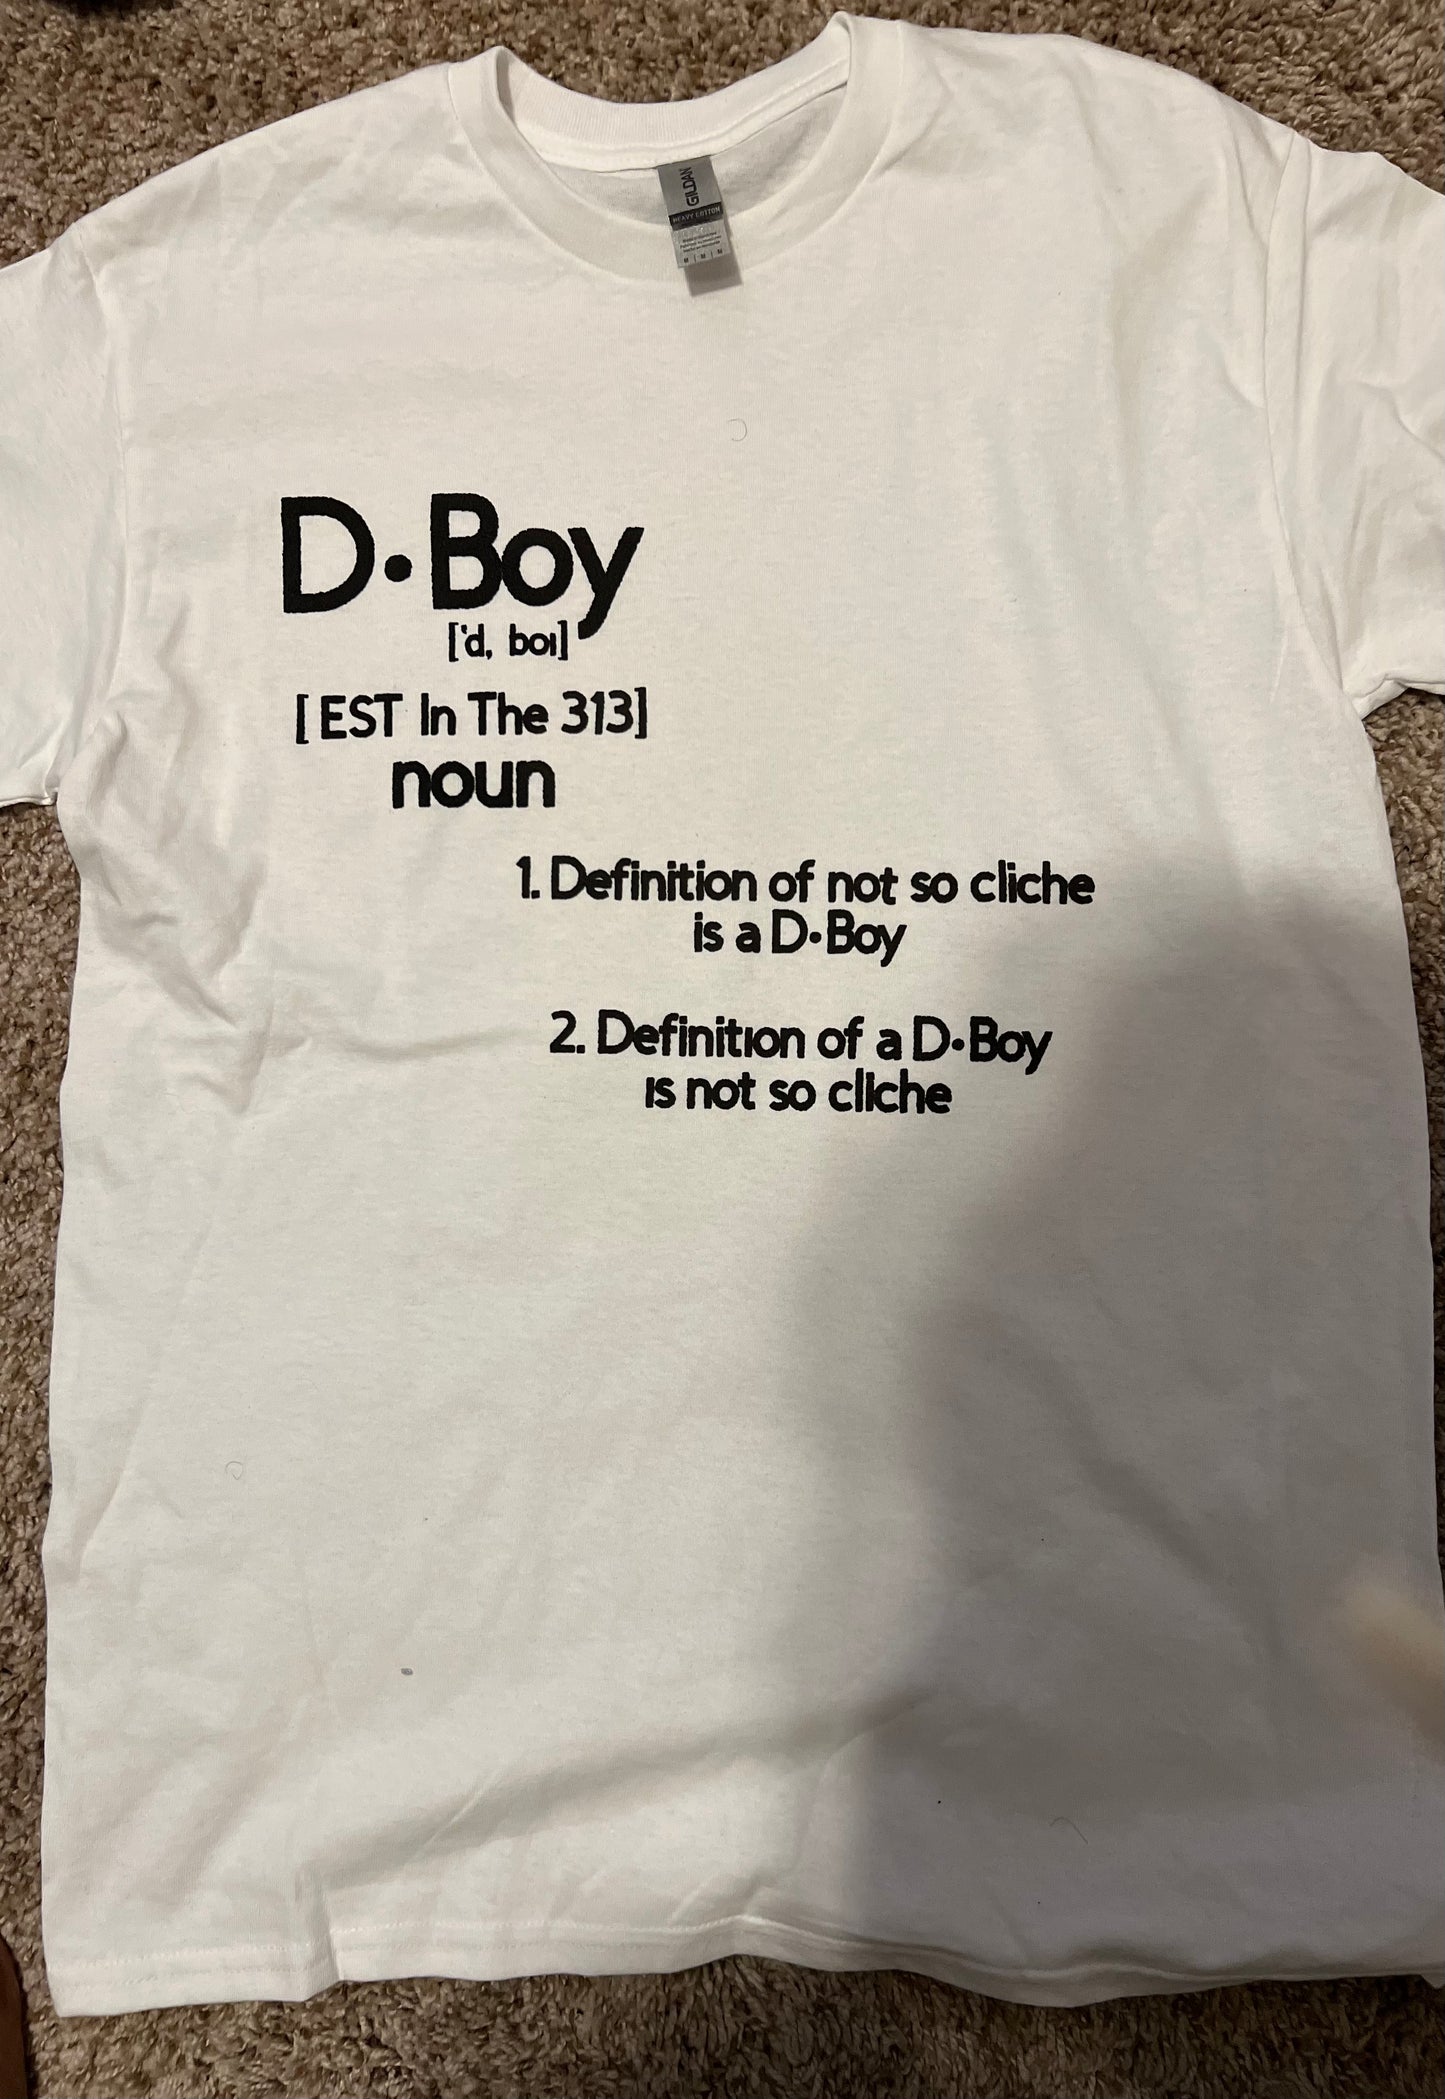 What d boy means?